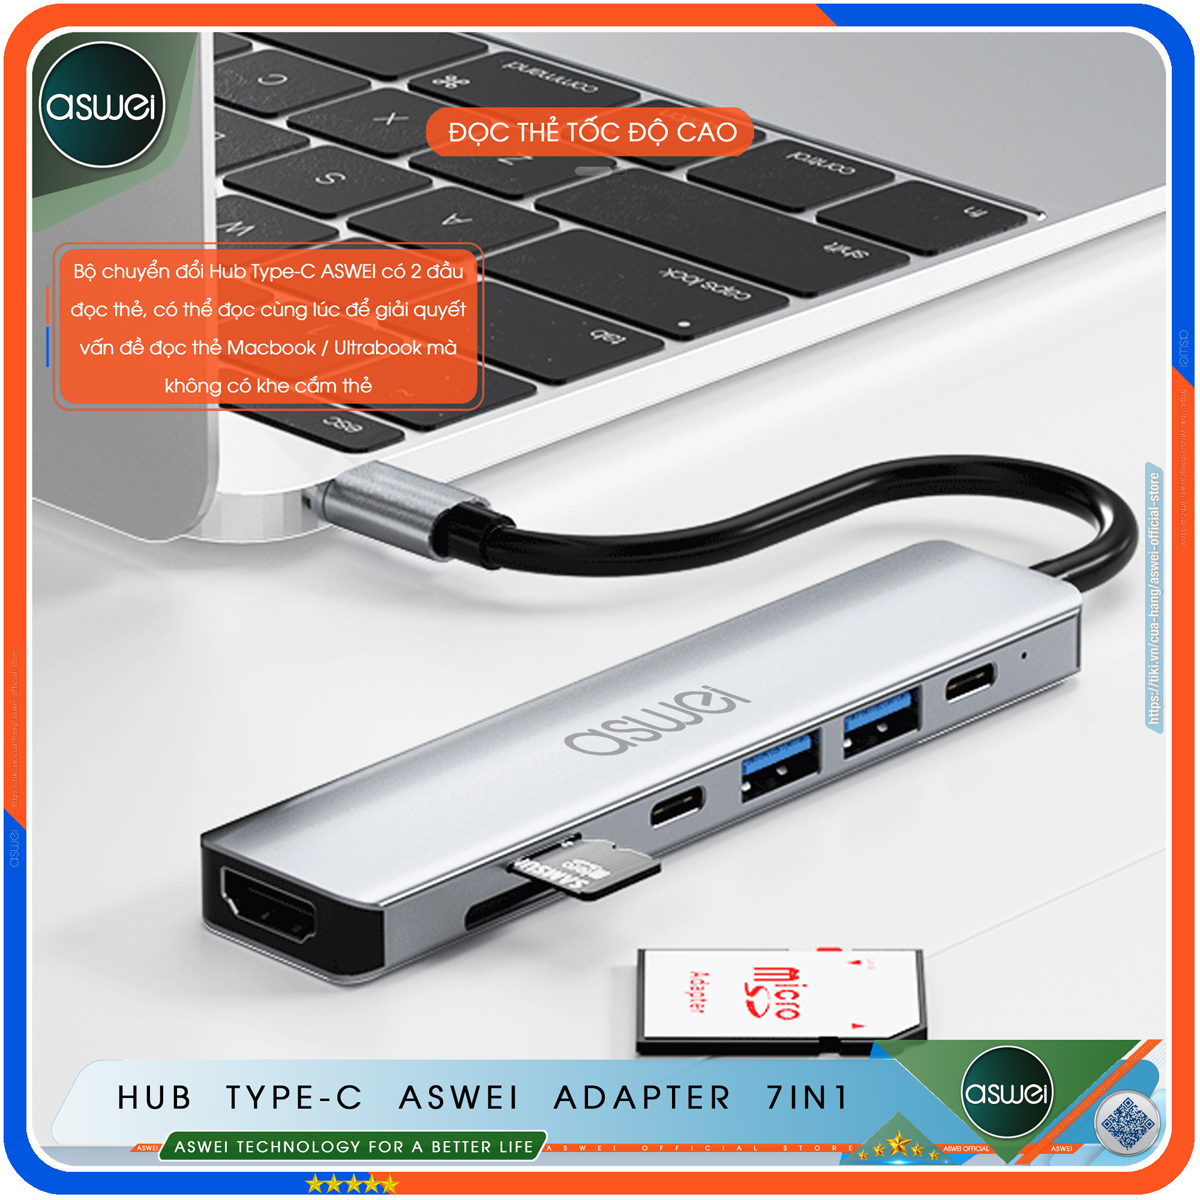 Hub Type C To HDMI ASWEI 7 in 1 Chuẩn HDTV - Hub Chuyển Đổi USB Type-C To HDMI 4K, USB 3.0, Sạc Nhanh PD 100W, USB-C, Đầu Đọc Thẻ Nhớ SD TF - Bộ Chia USB Kết Nối Tốc Độ Cao - Dành Cho Macbook, Laptop, PC, Máy Tính Bảng, Điện Thoại - Hàng Chính Hãng